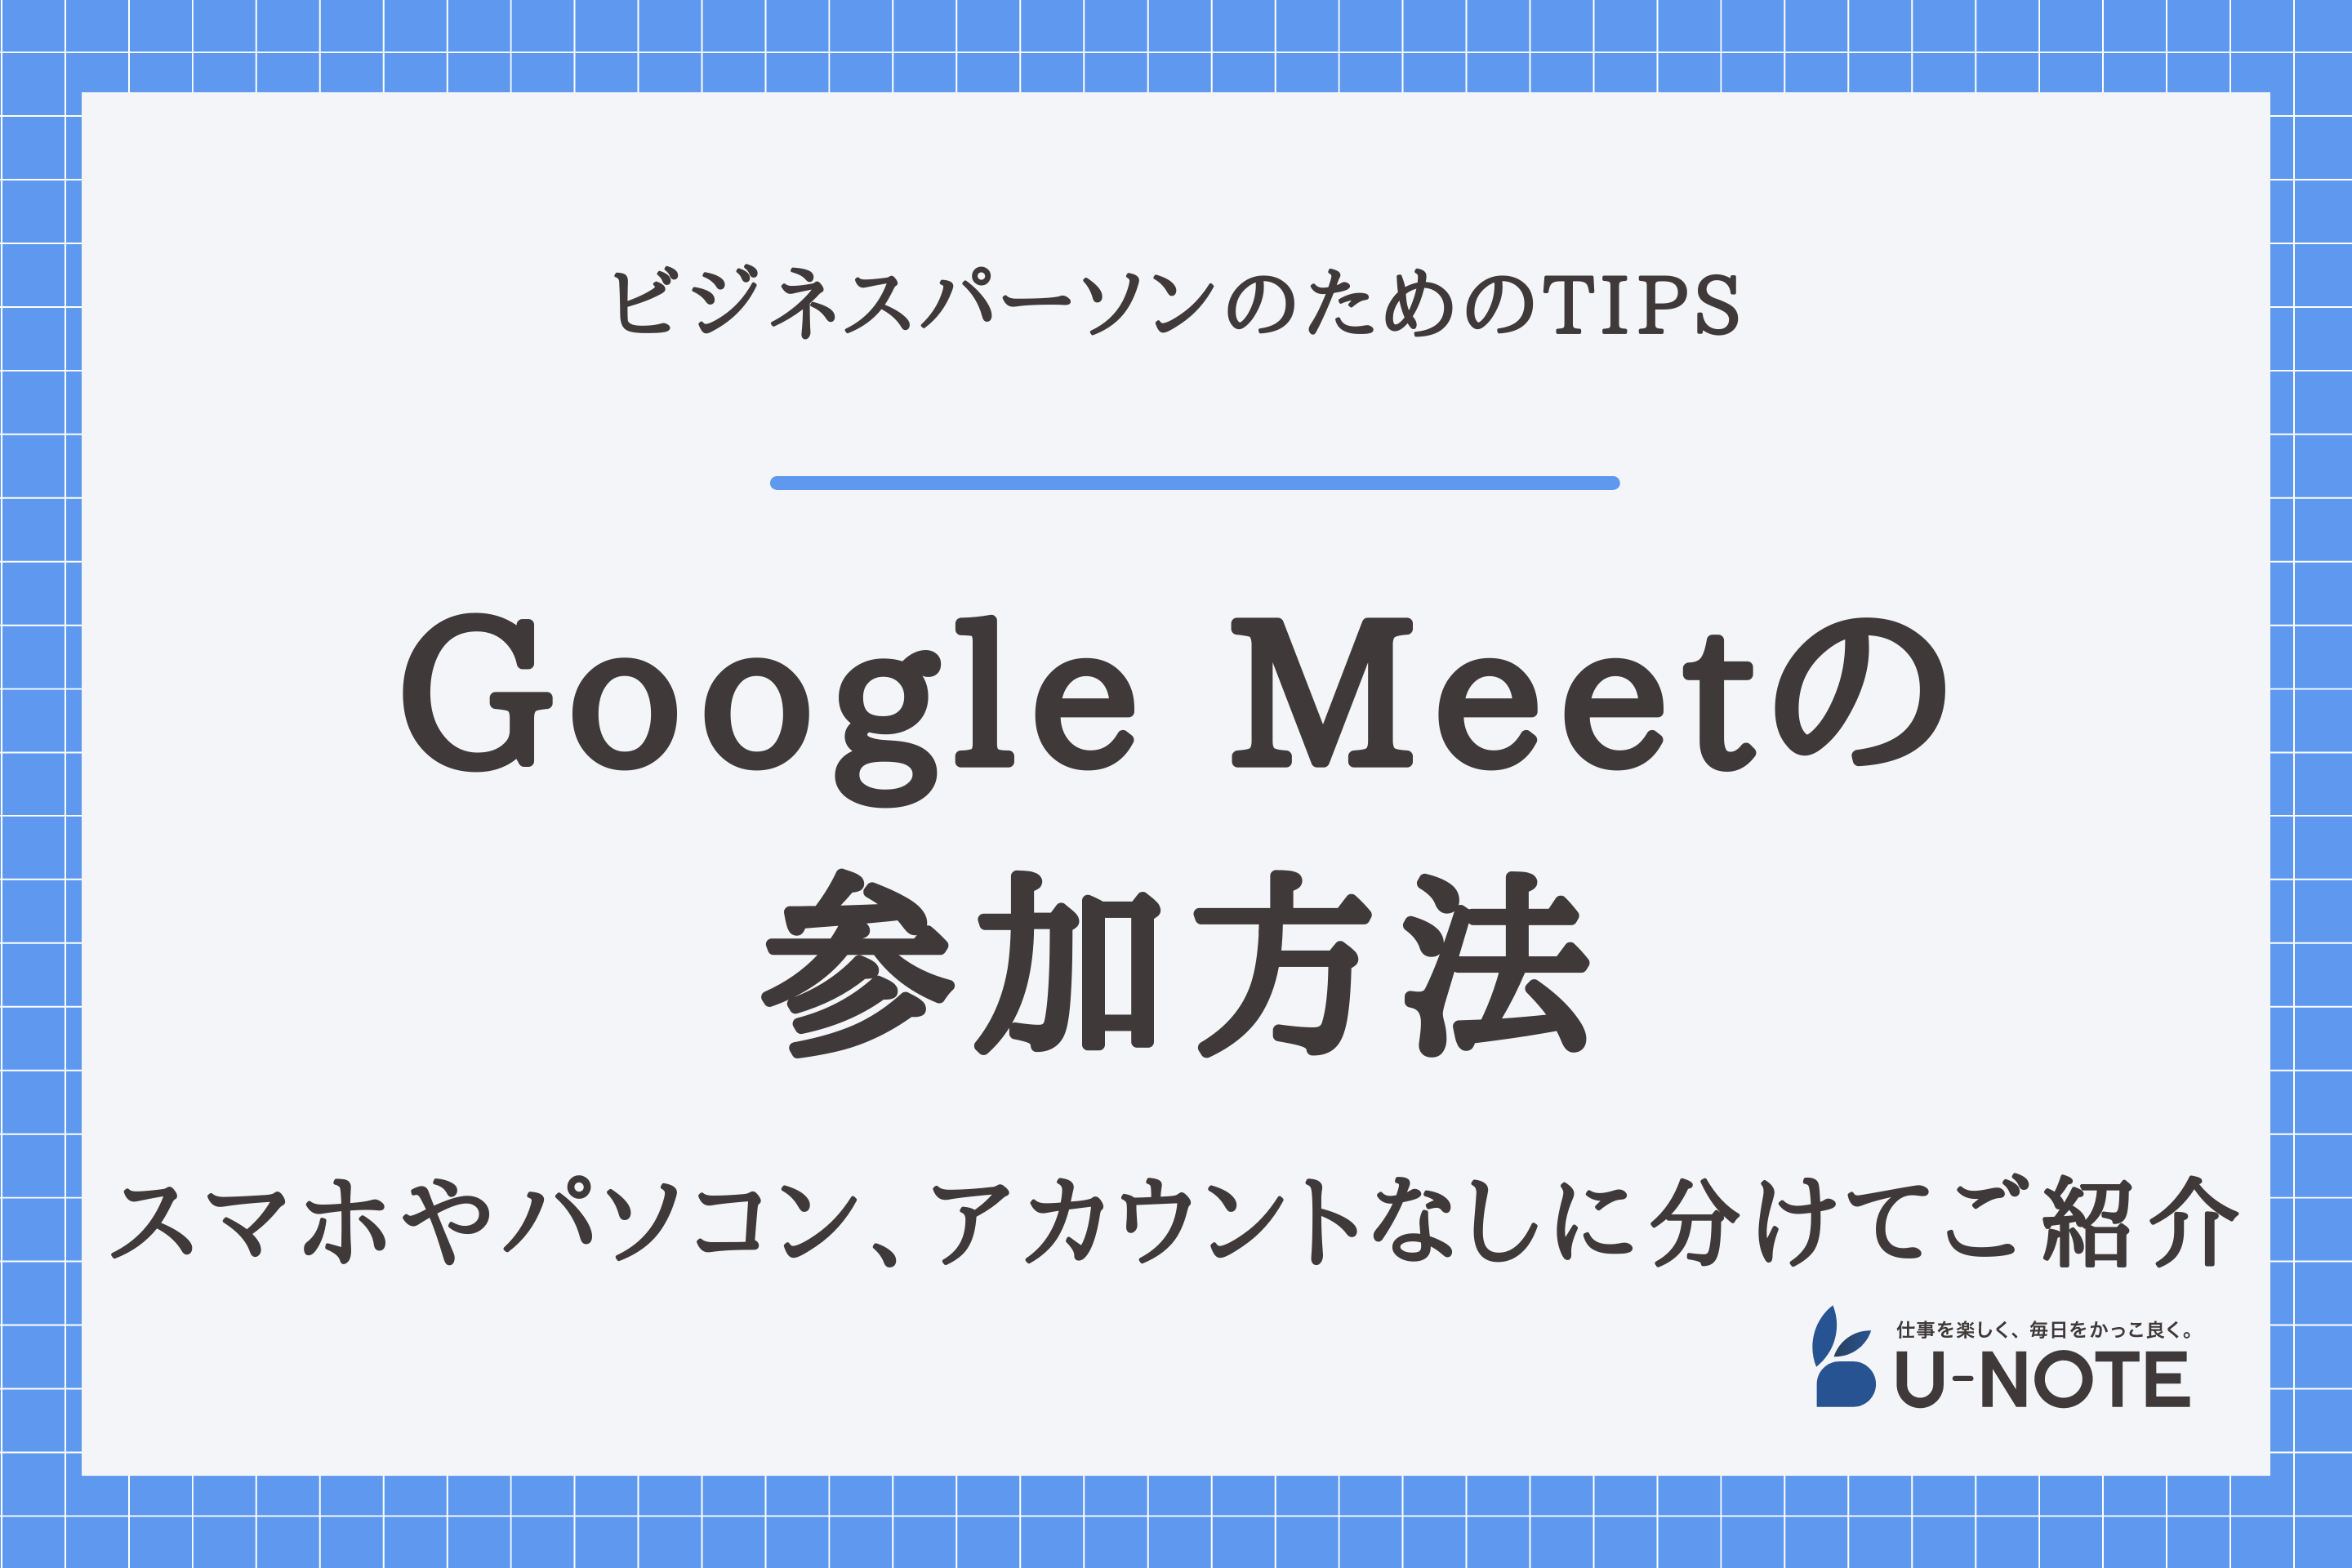 Google Meetへの参加方法は？スマホやパソコン、アカウントなしに分けてご紹介